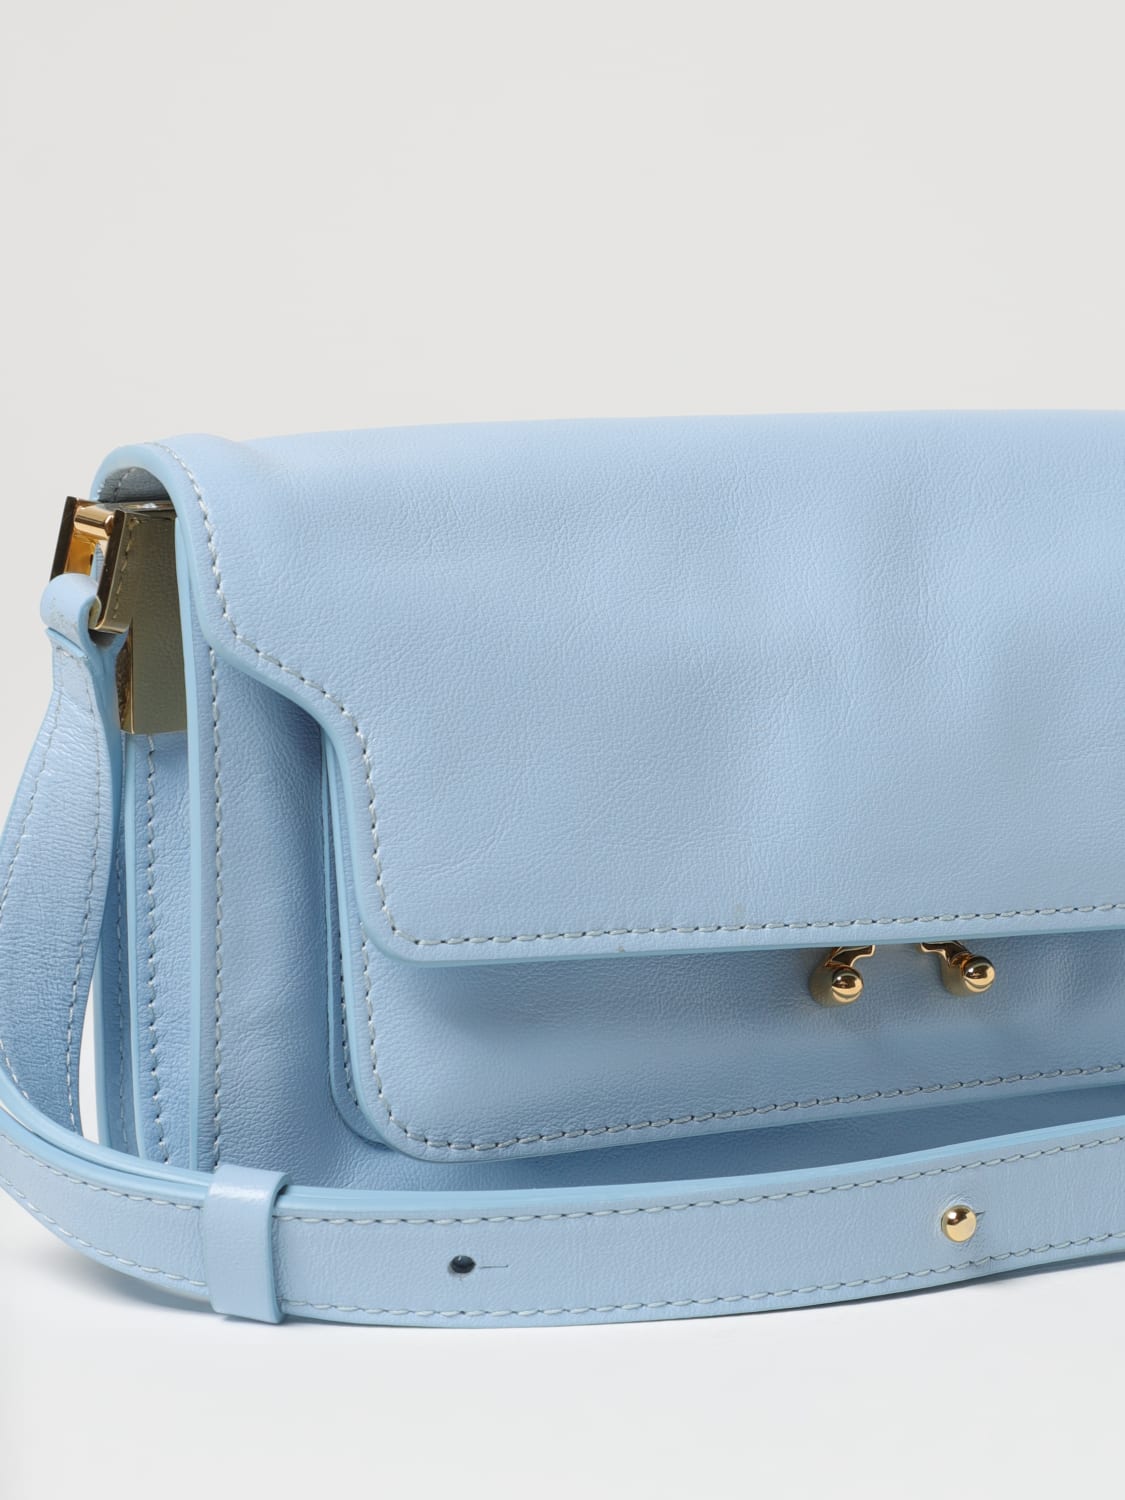 Marni 'trunk Light' Shoulder Bag in Blue